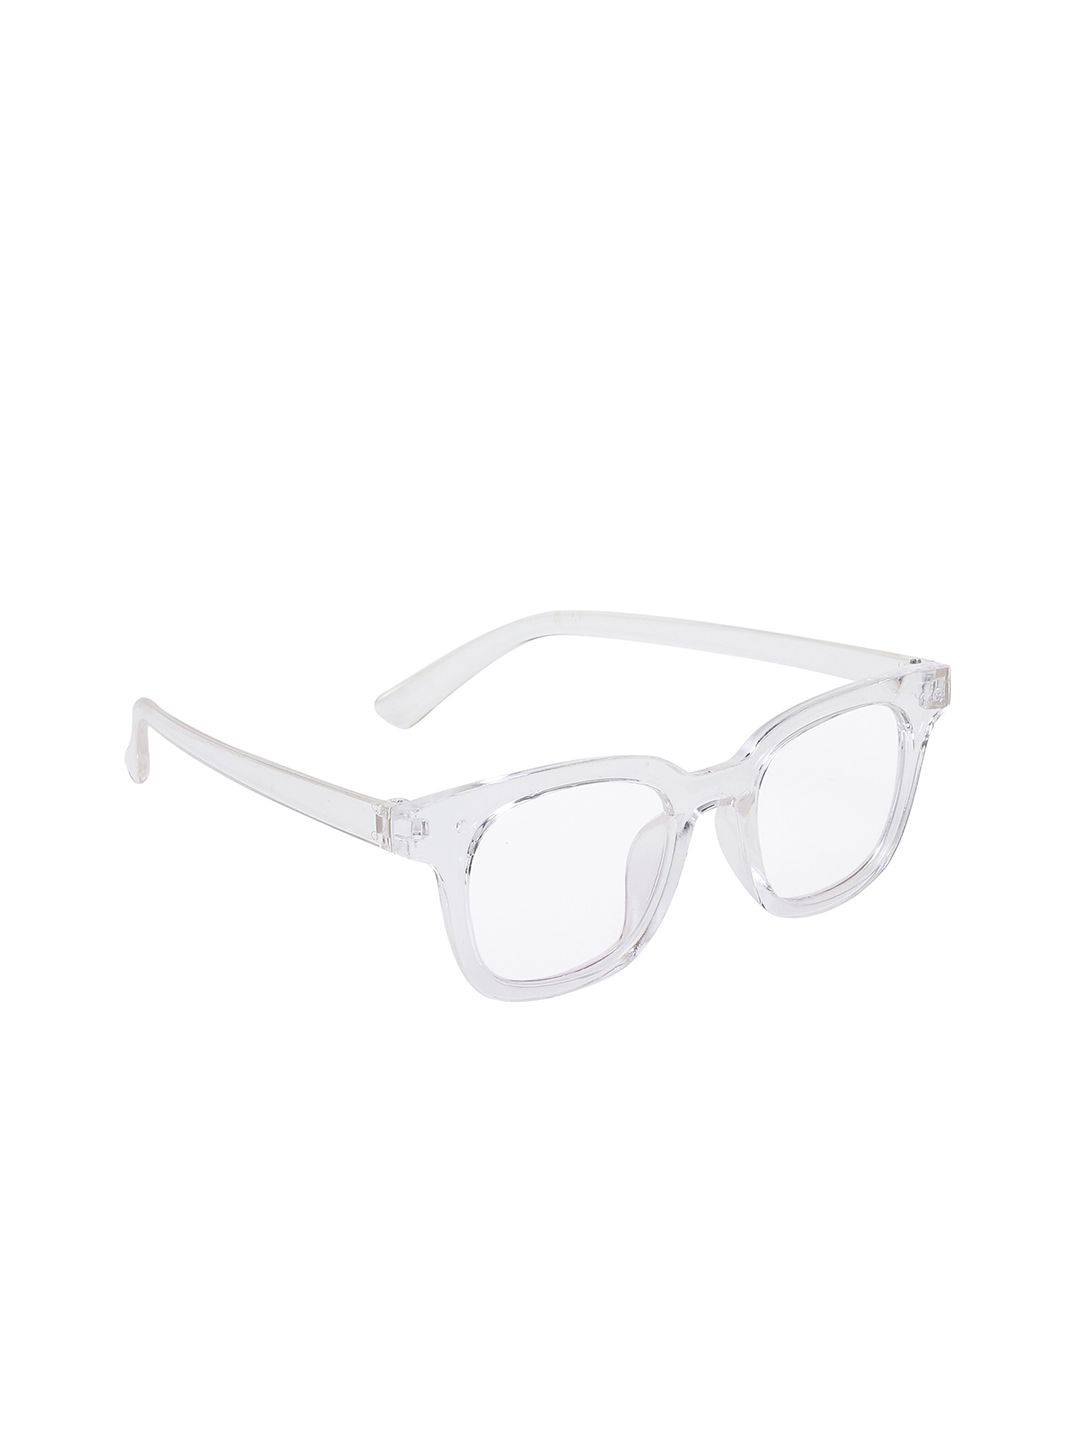 CRIBA Full Rim Wayfarer Sunglasses with UV Protected Lens VCR_TRNS_WHT-BRD